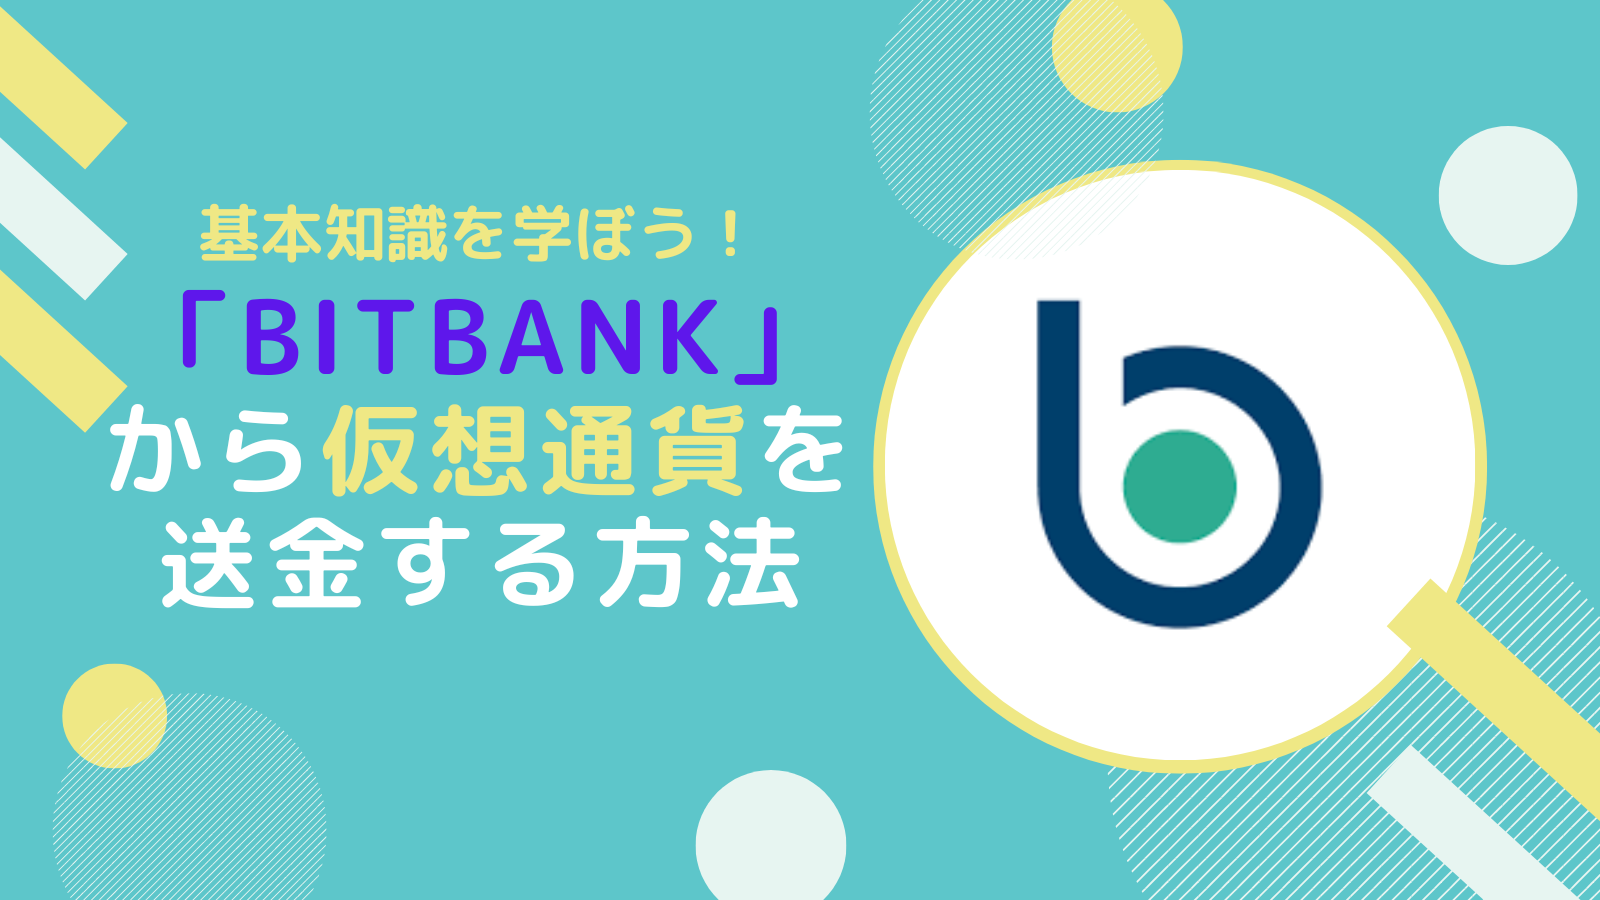 【基本知識】bitbankから仮想通貨(暗号通貨)を送金する方法